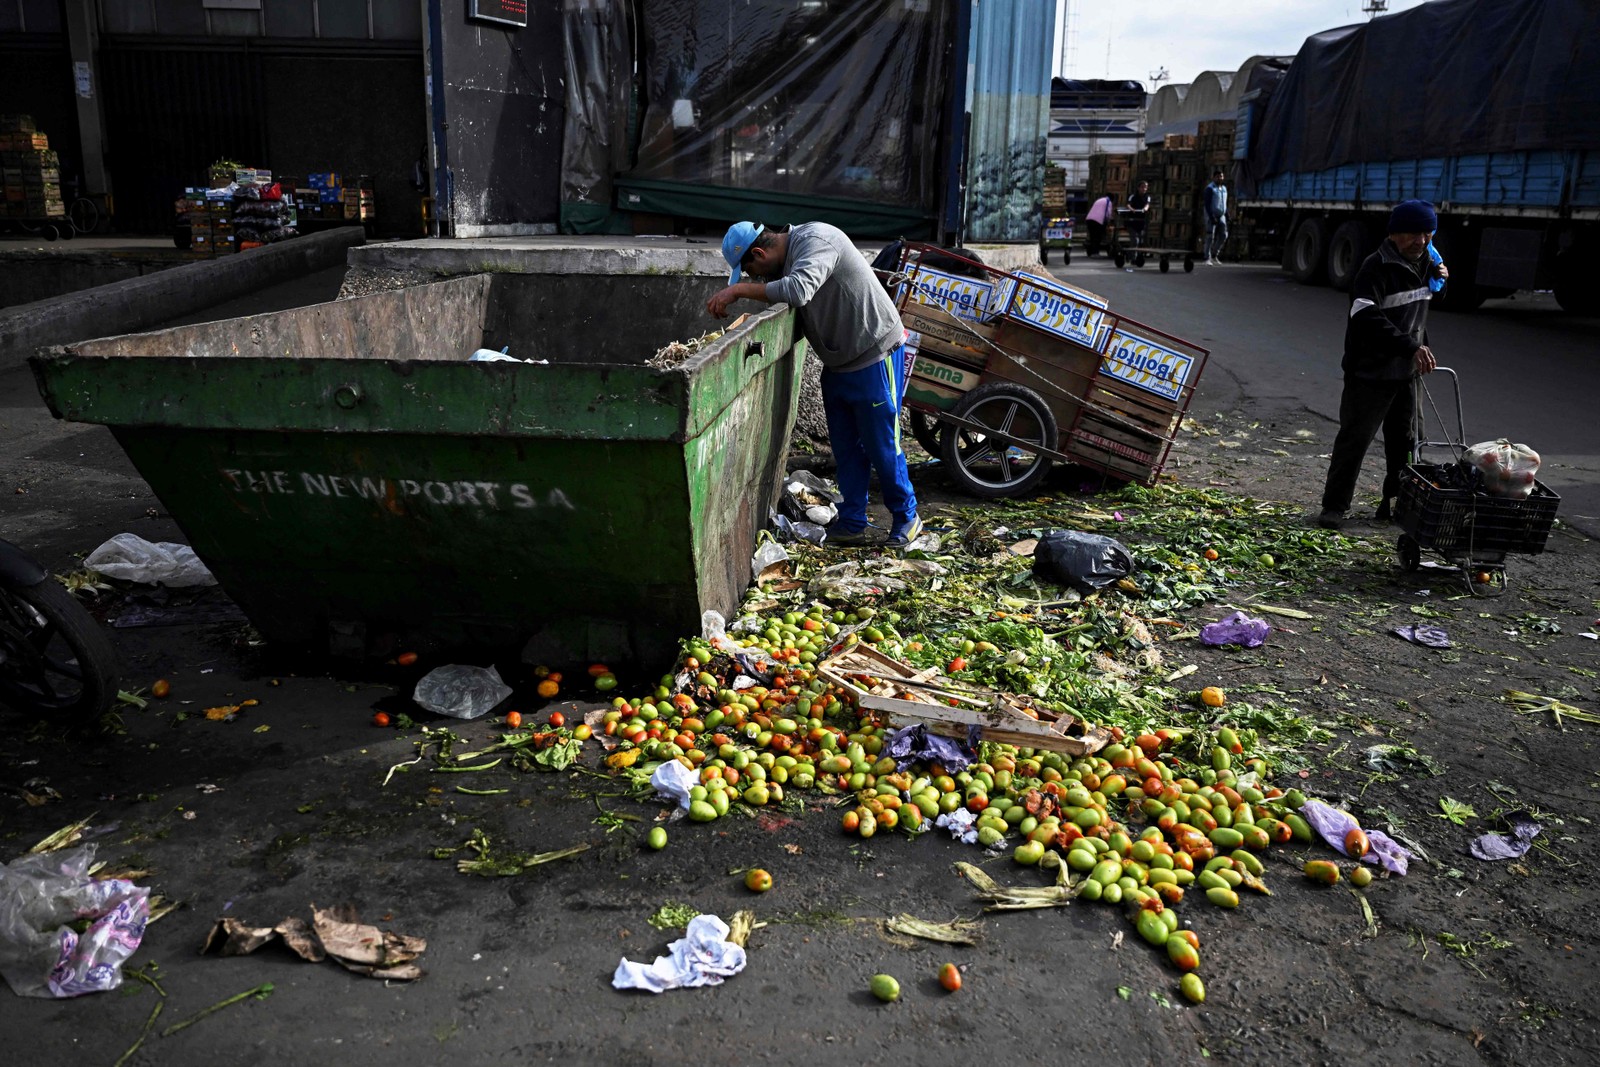 Um homem procura comida dentro de uma lata de lixo onde frutas e vegetais descartados são depositados no Mercado Central de Buenos Aires. — Foto: Luis ROBAYO / AFP